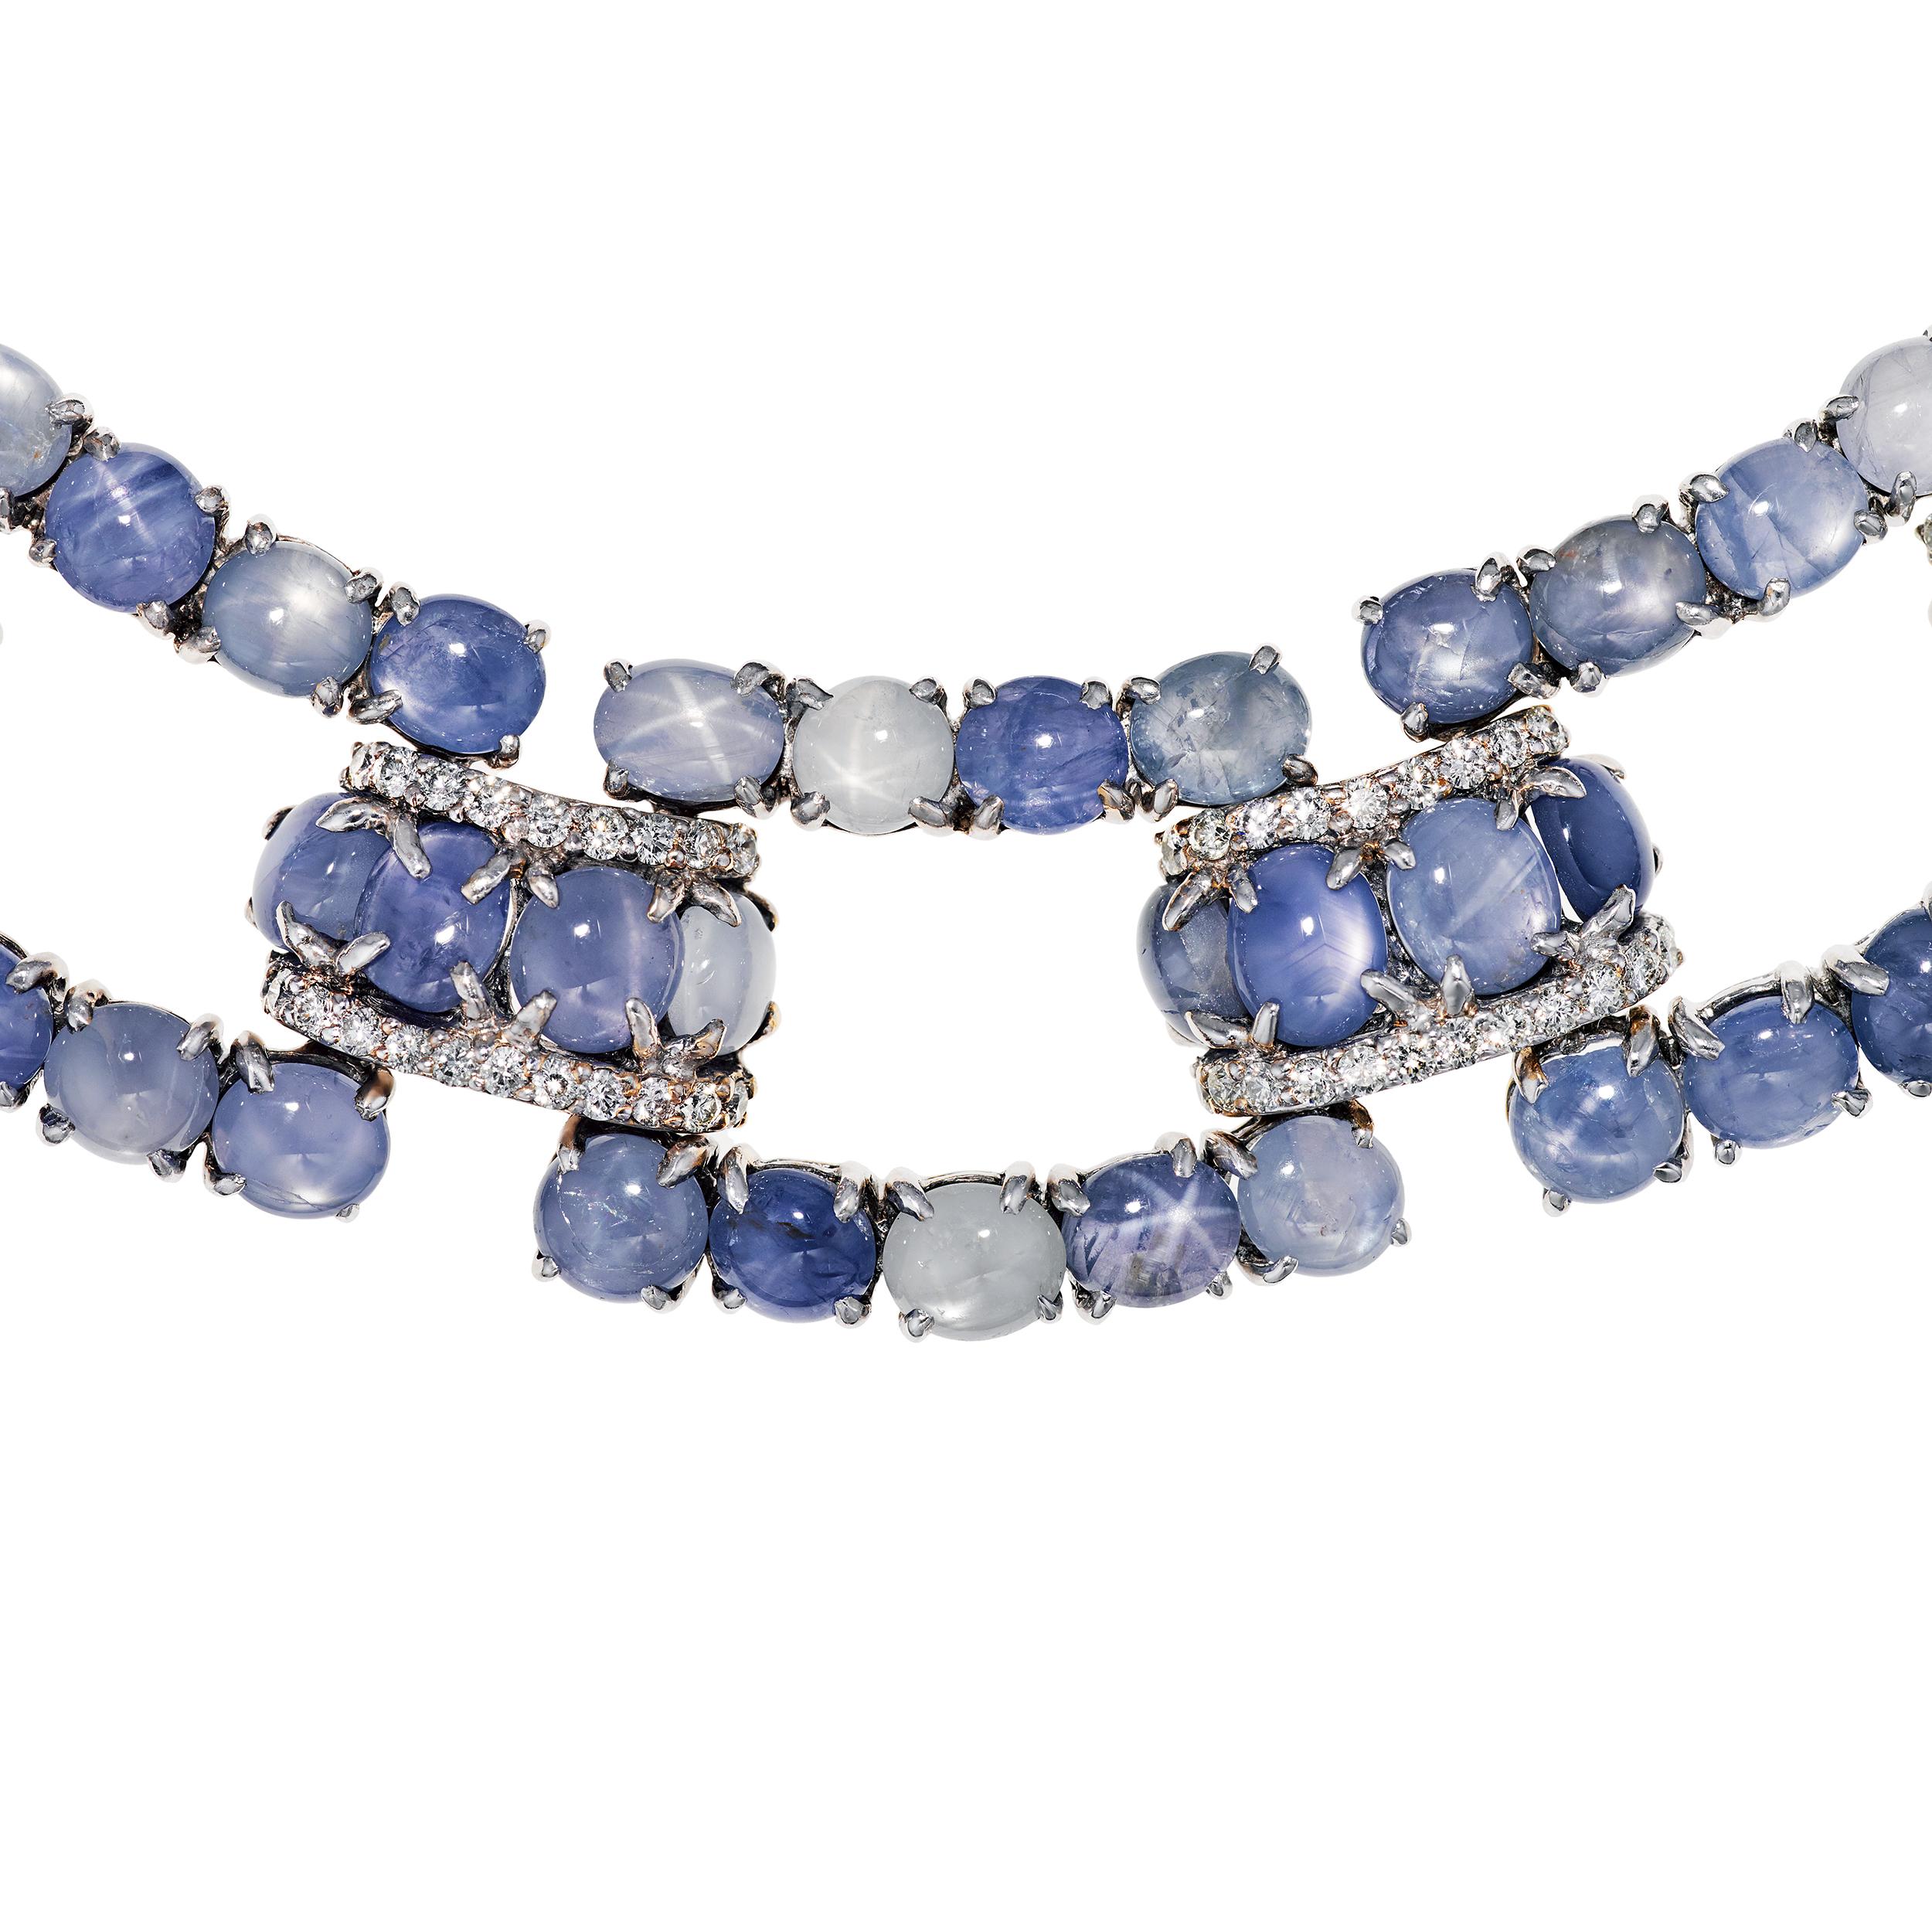 kashmir sapphire necklace